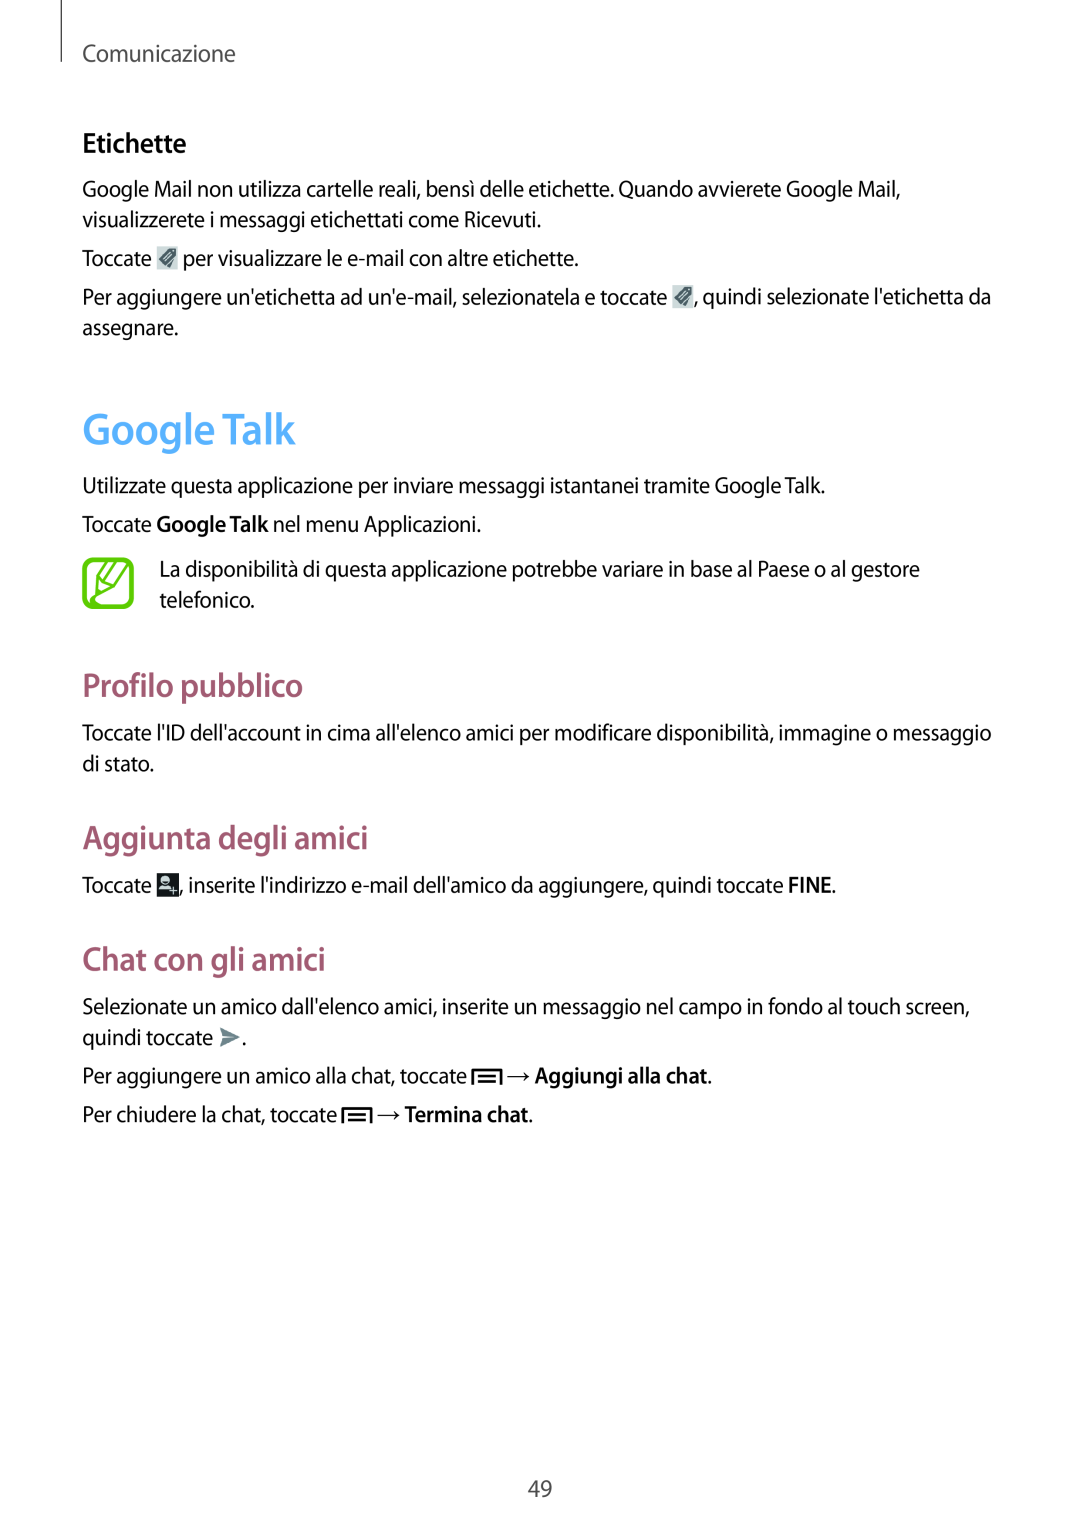 Samsung GT-S6810PWNWIN Google Talk, Profilo pubblico, Aggiunta degli amici, Chat con gli amici, Etichette, Comunicazione 